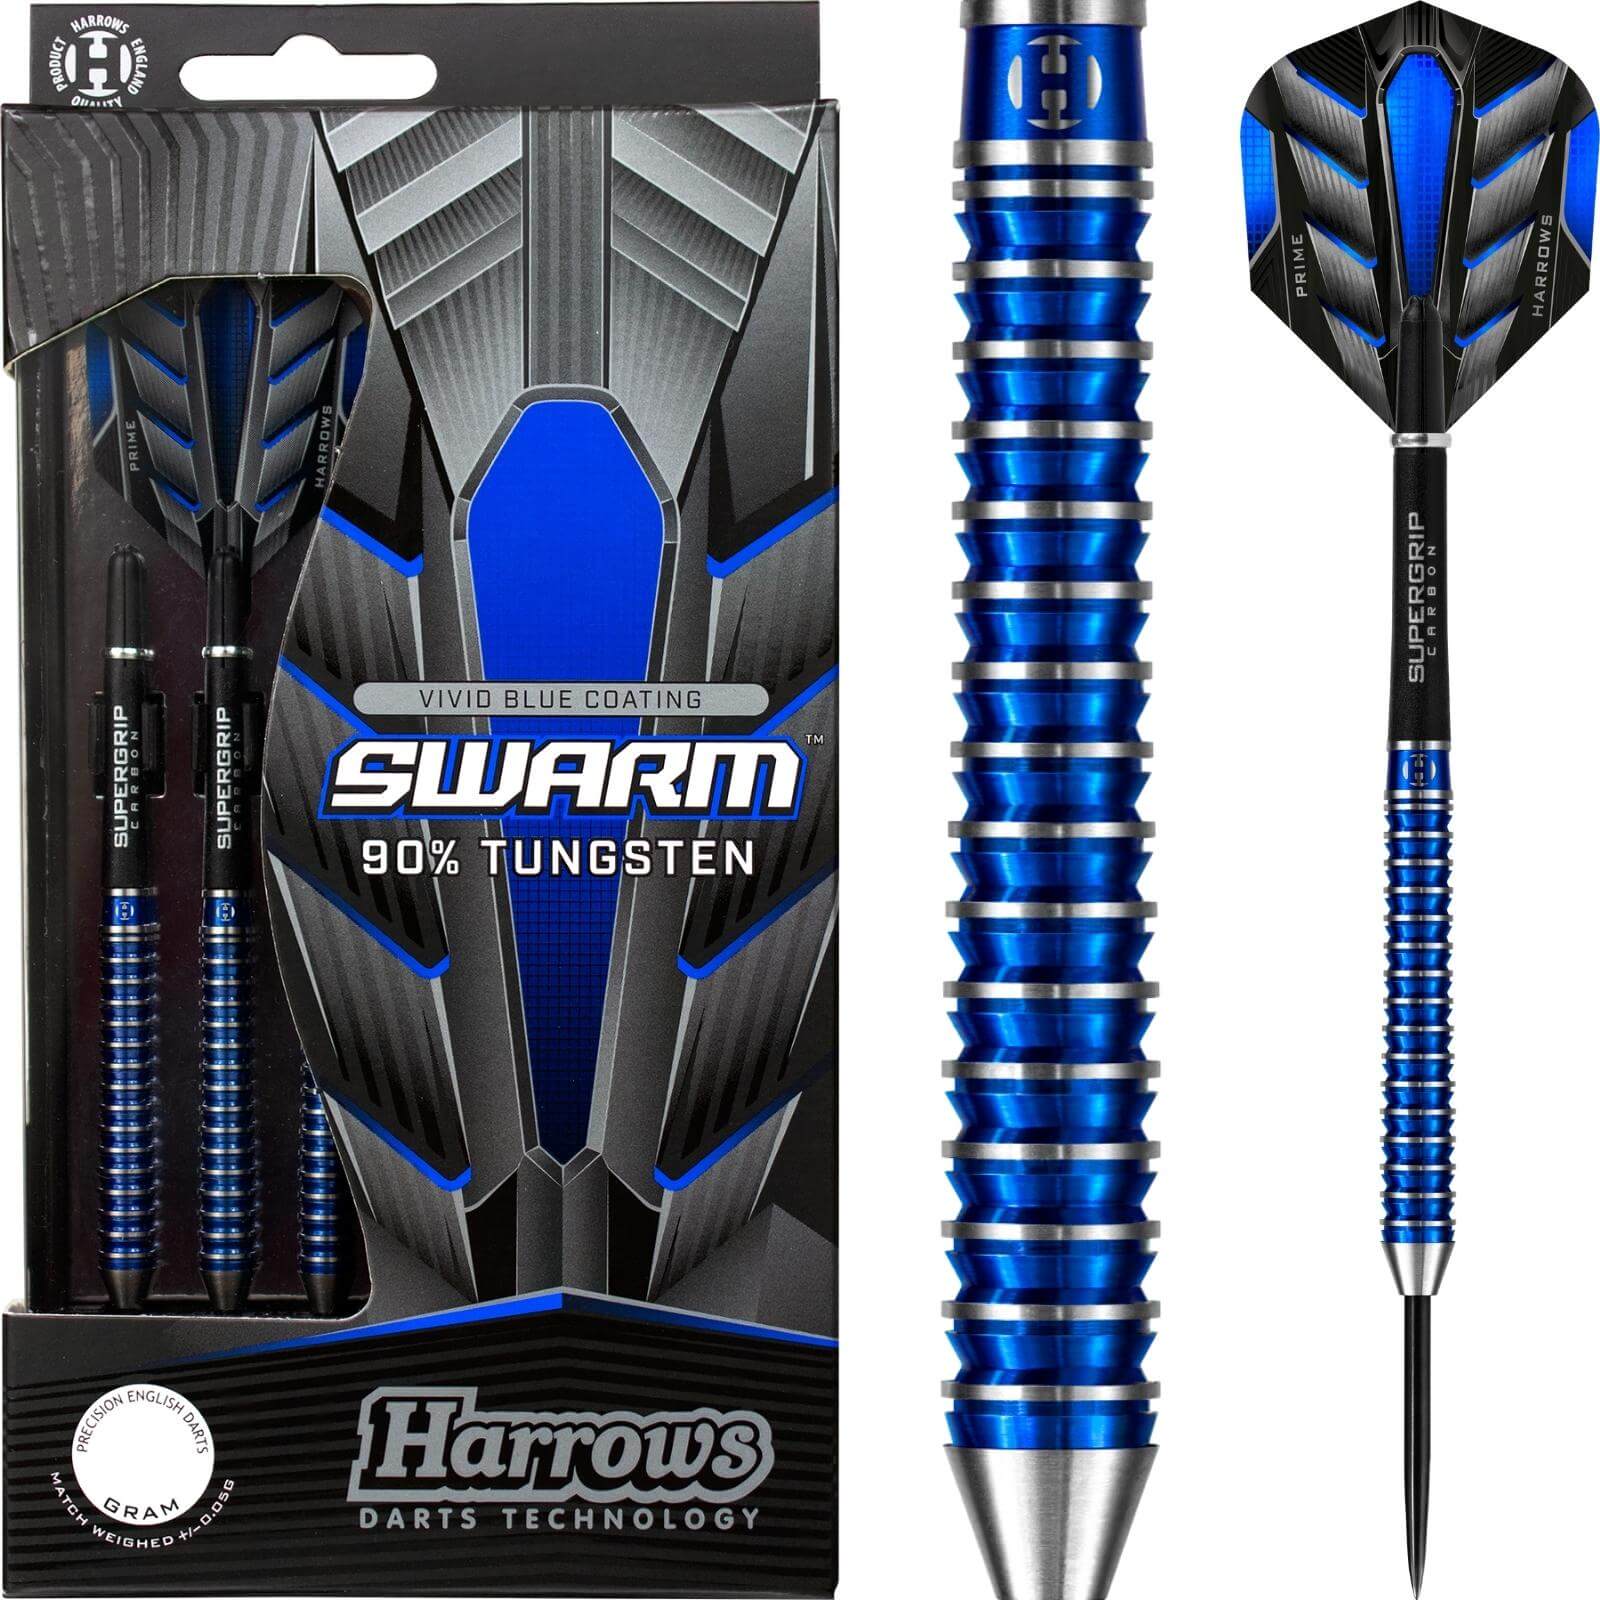 Darts - Harrows - Swarm Darts - Steel Tip - 90% Tungsten - 21g 22g 23g 24g 25g 26g 